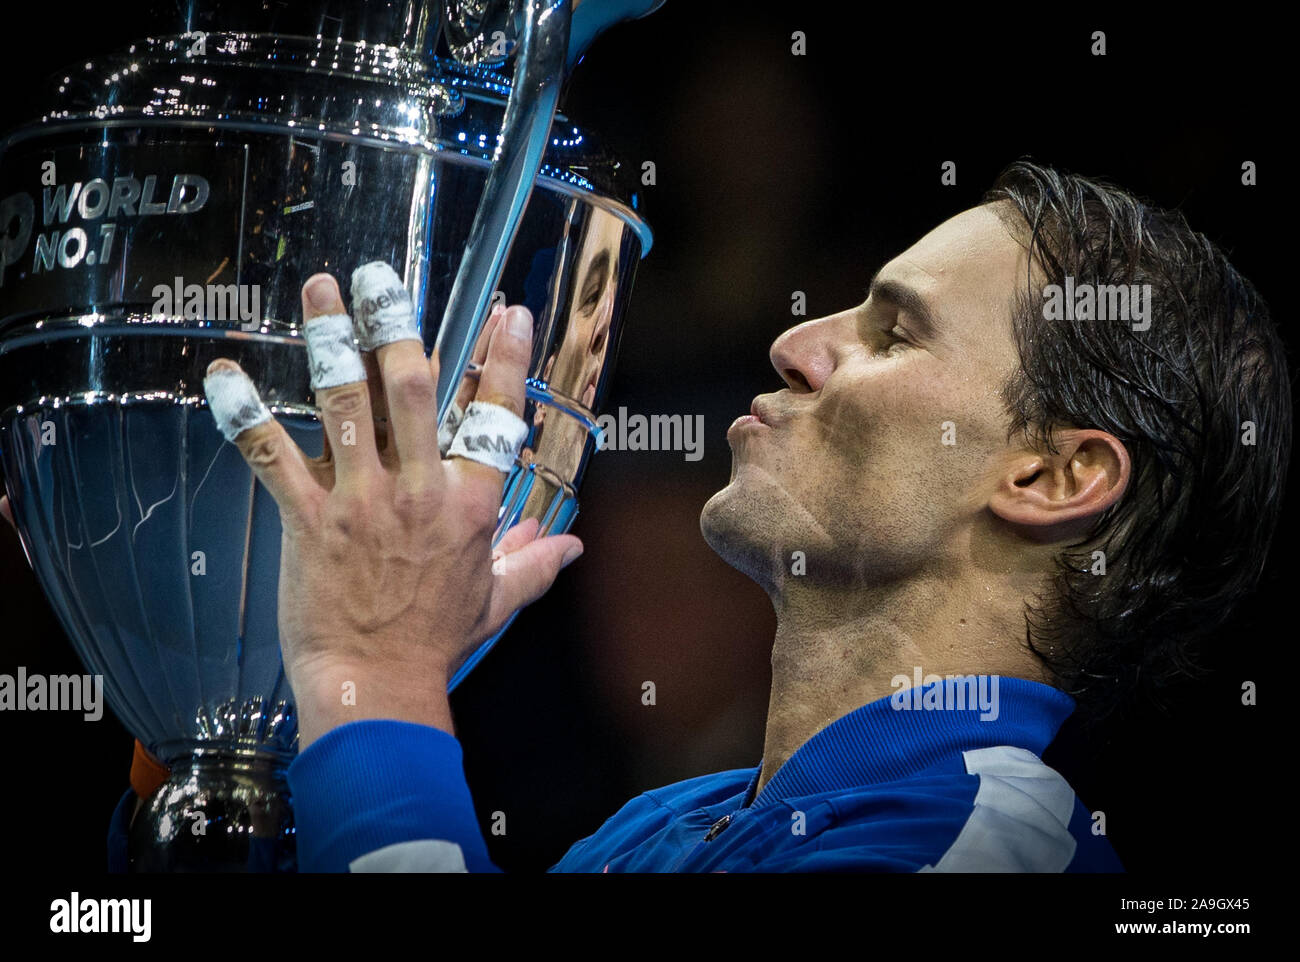 Londra, Regno Unito. Xv Nov, 2019. Rafa "" Rafael Nadal (Spagna) solleva il numero uno del mondo trofeo durante la Nitto ATP Finals Tennis Londra giorno 6 presso l'O2, Londra, Inghilterra il 15 novembre 2019. Foto di Andy Rowland. Credito: prime immagini multimediali/Alamy Live News Foto Stock